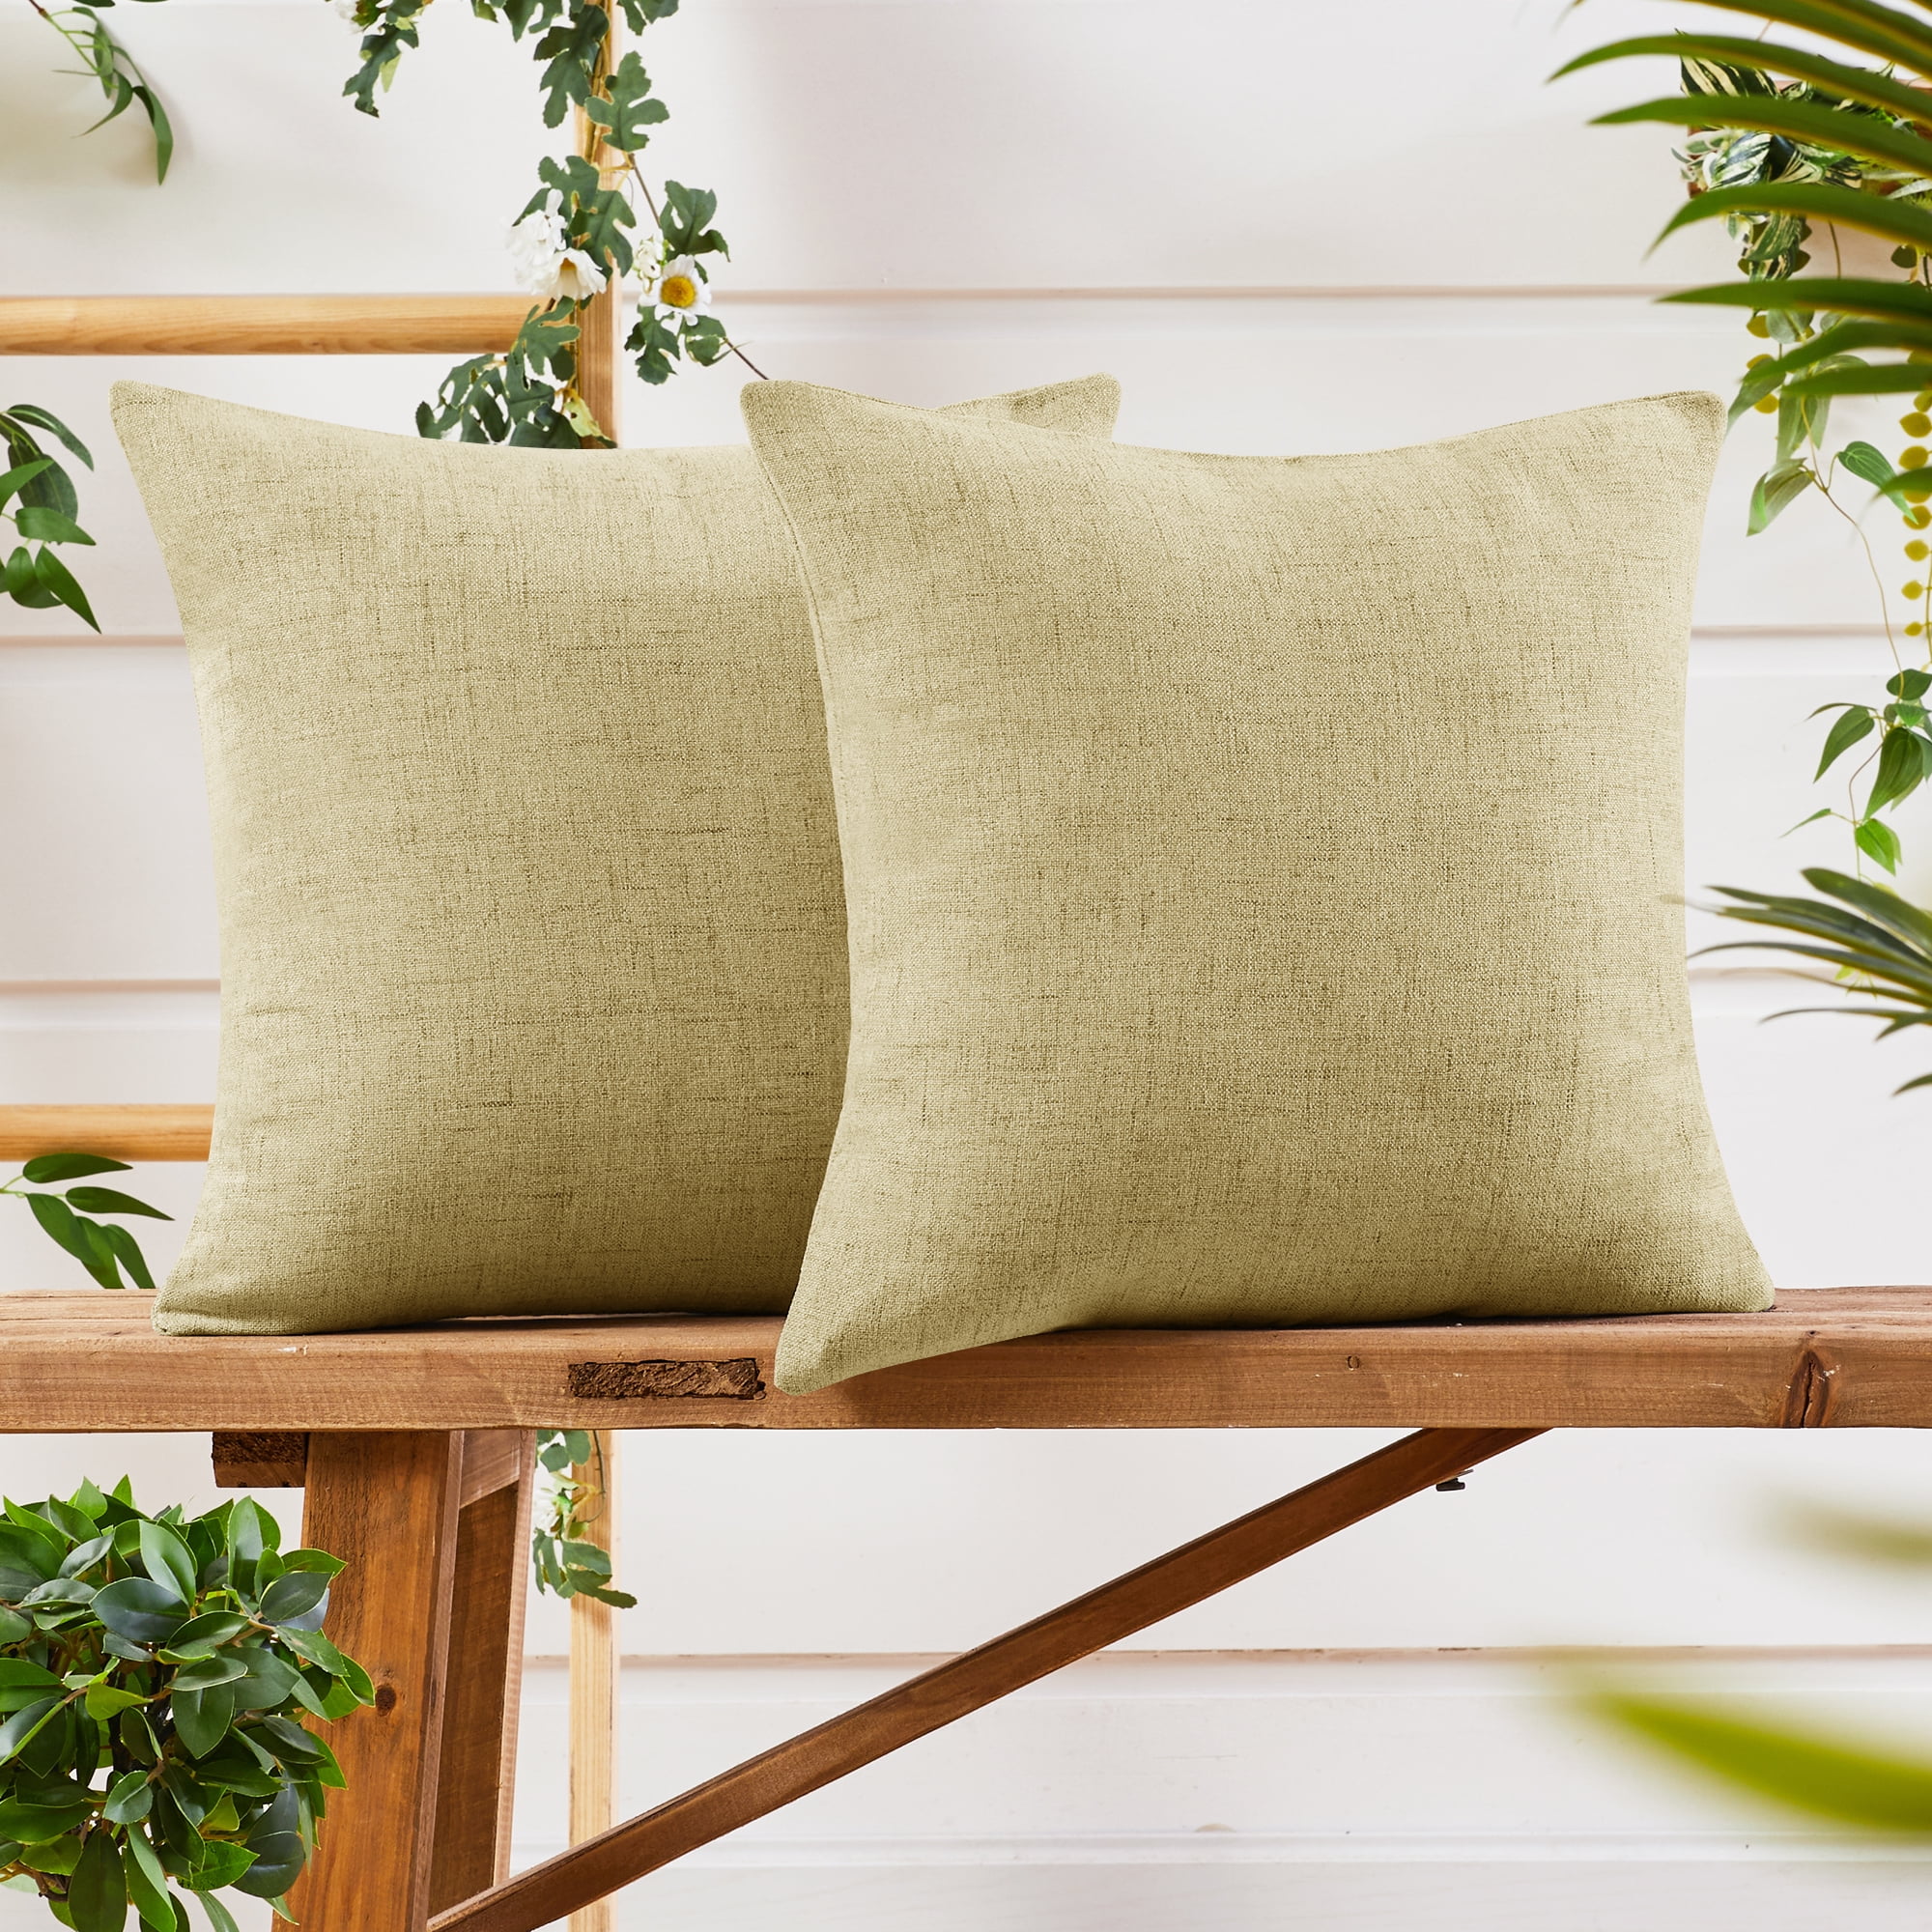 18" Lattice Checked Pillow Case Cotton Linen Sofa Throw Cushion Cover Home Decor 